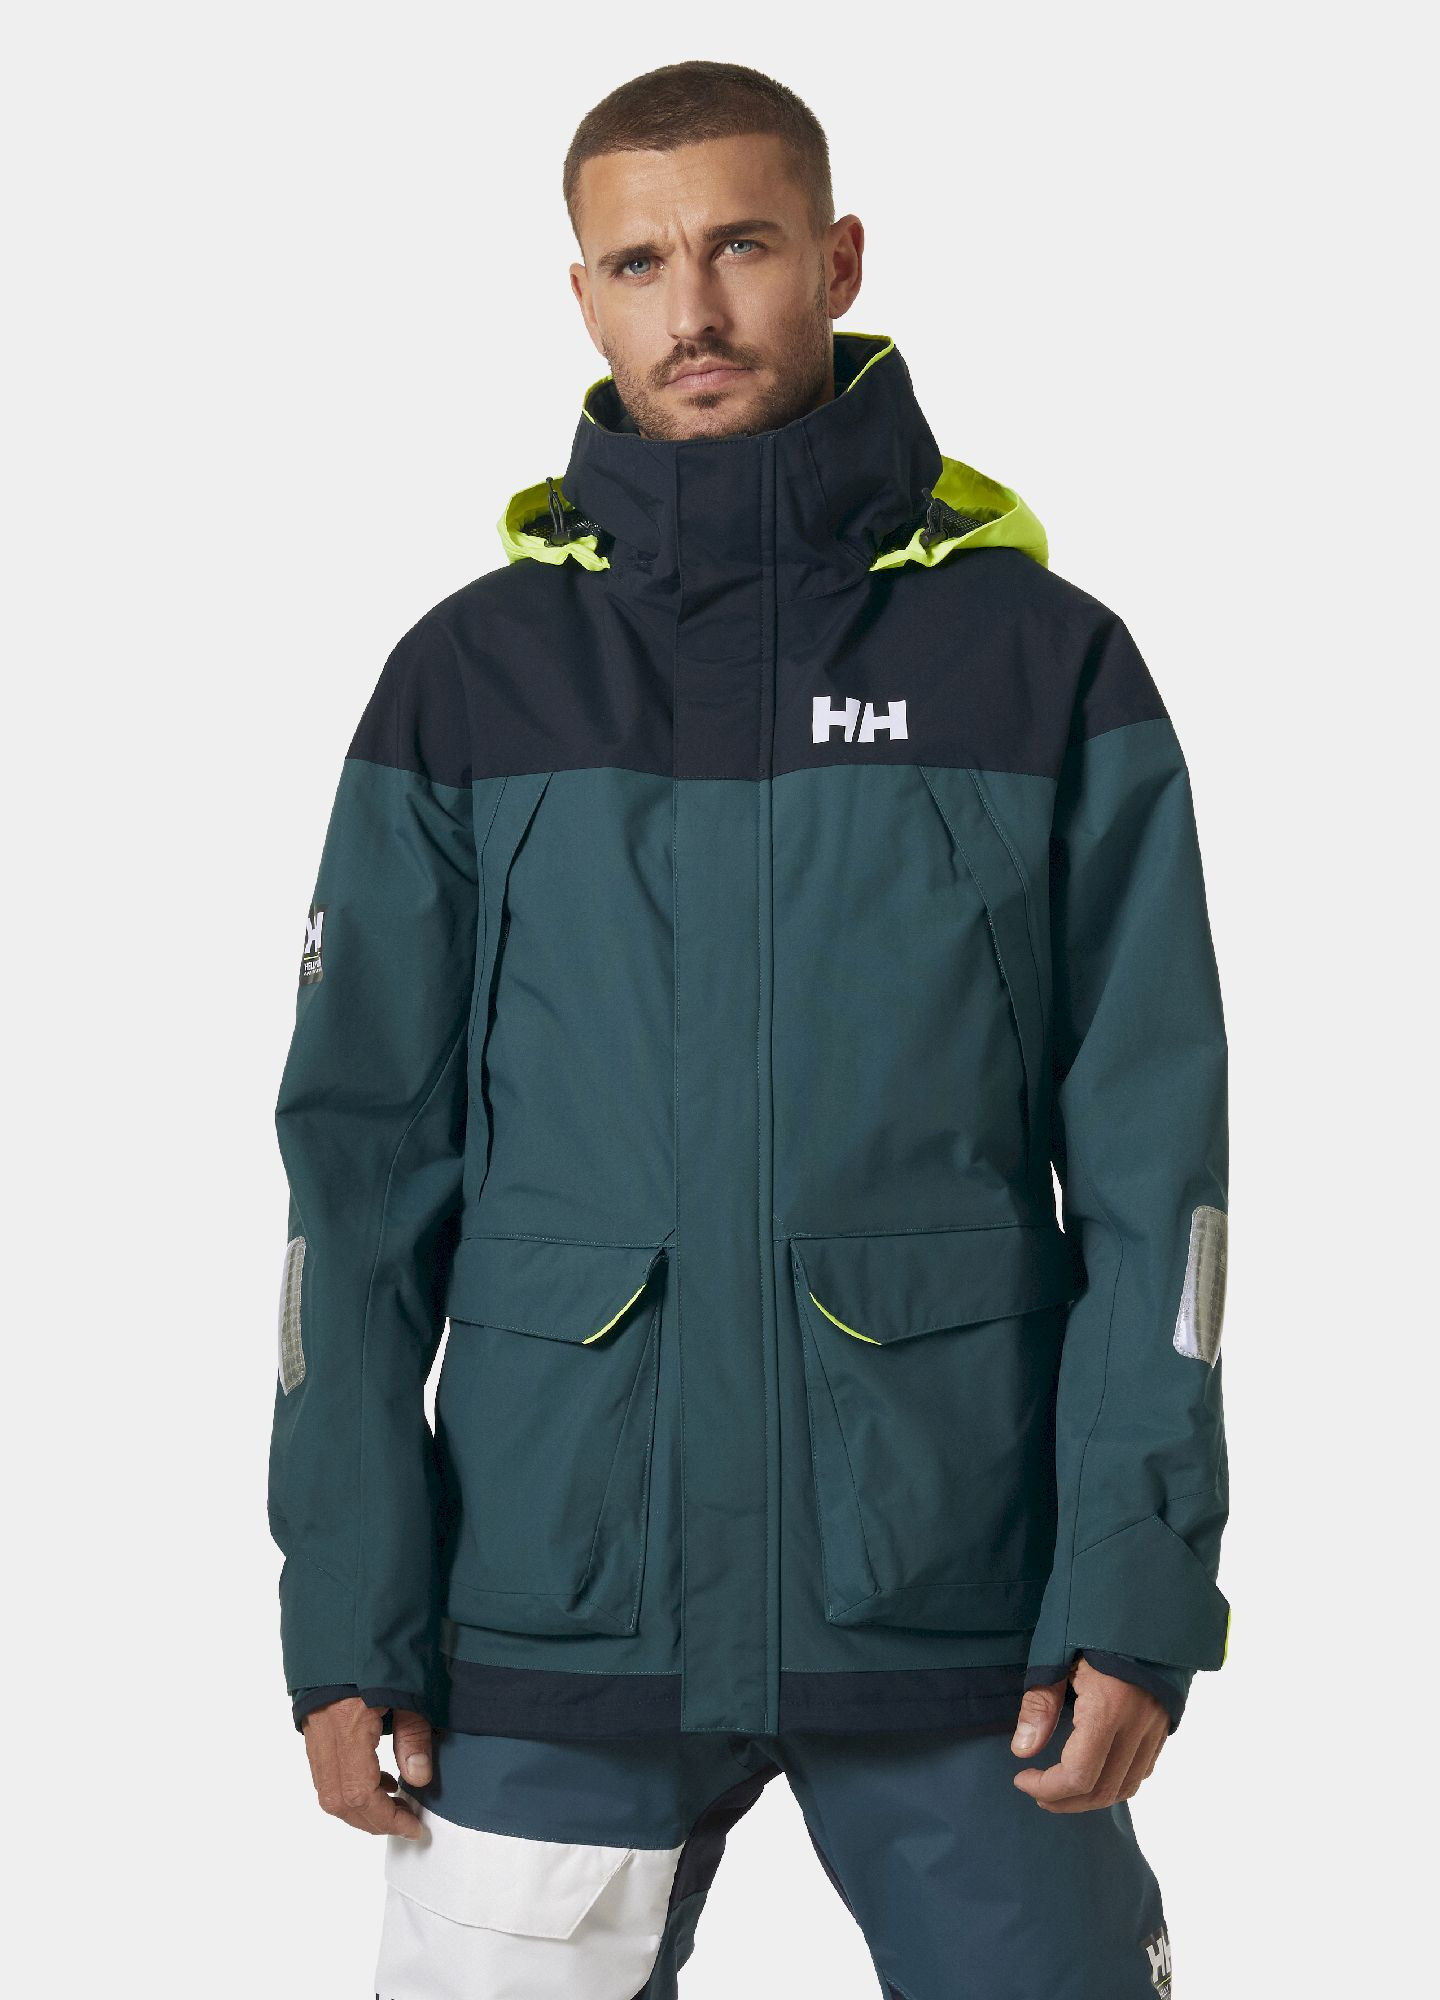 Helly Hansen Pier 3.0 Jacket - Waterproof jacket - Men's | Hardloop